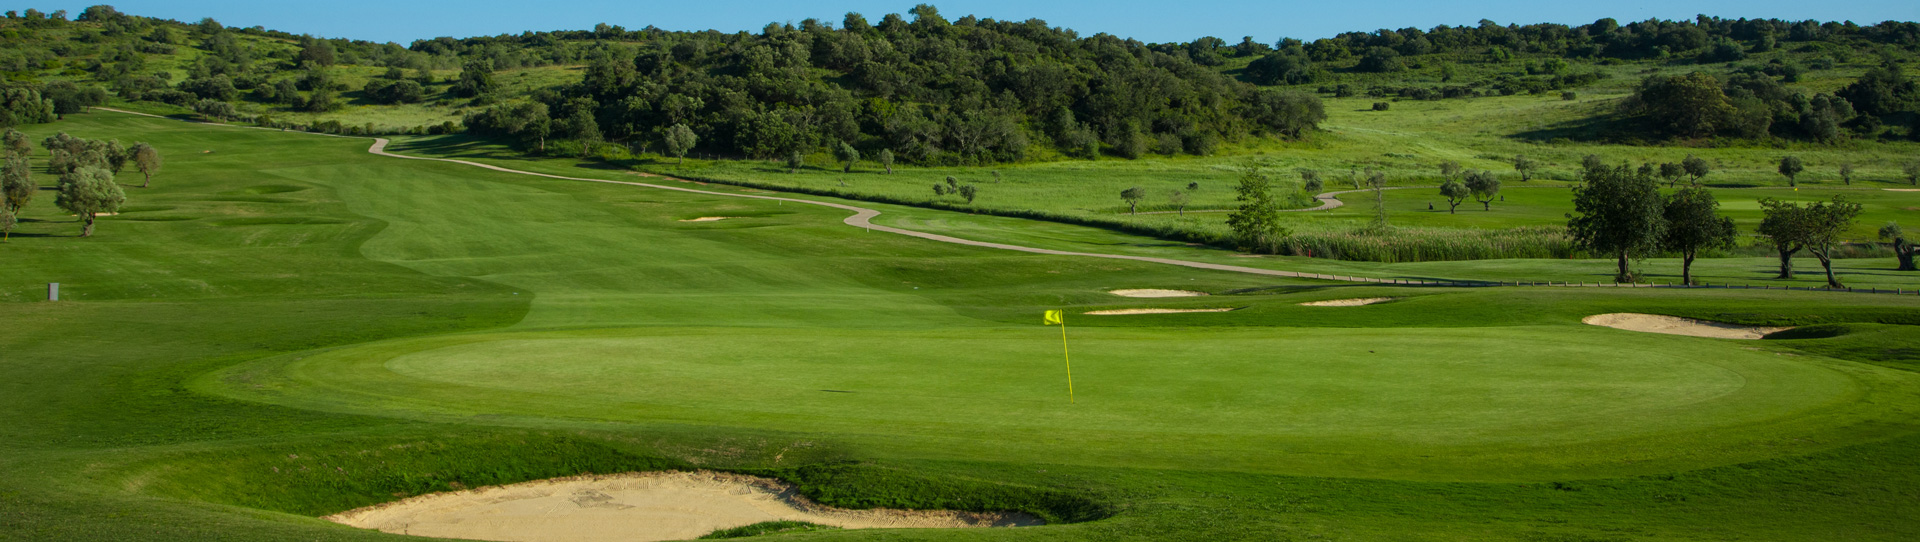 Portugal golf courses - Morgado Golf Course - Photo 3